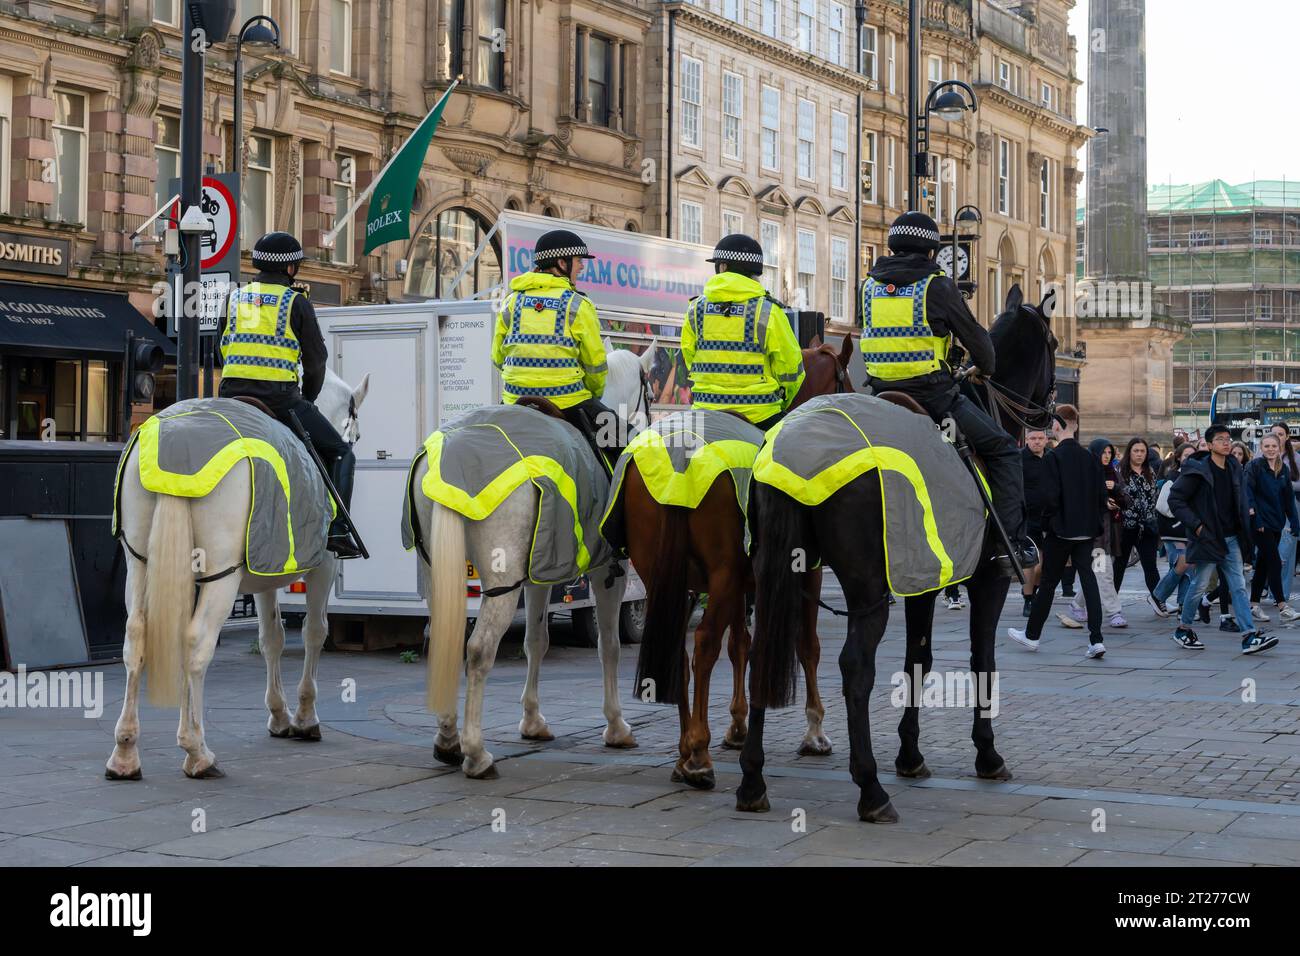 Police montée dans le centre-ville de Newcastle upon Tyne, Royaume-Uni Banque D'Images